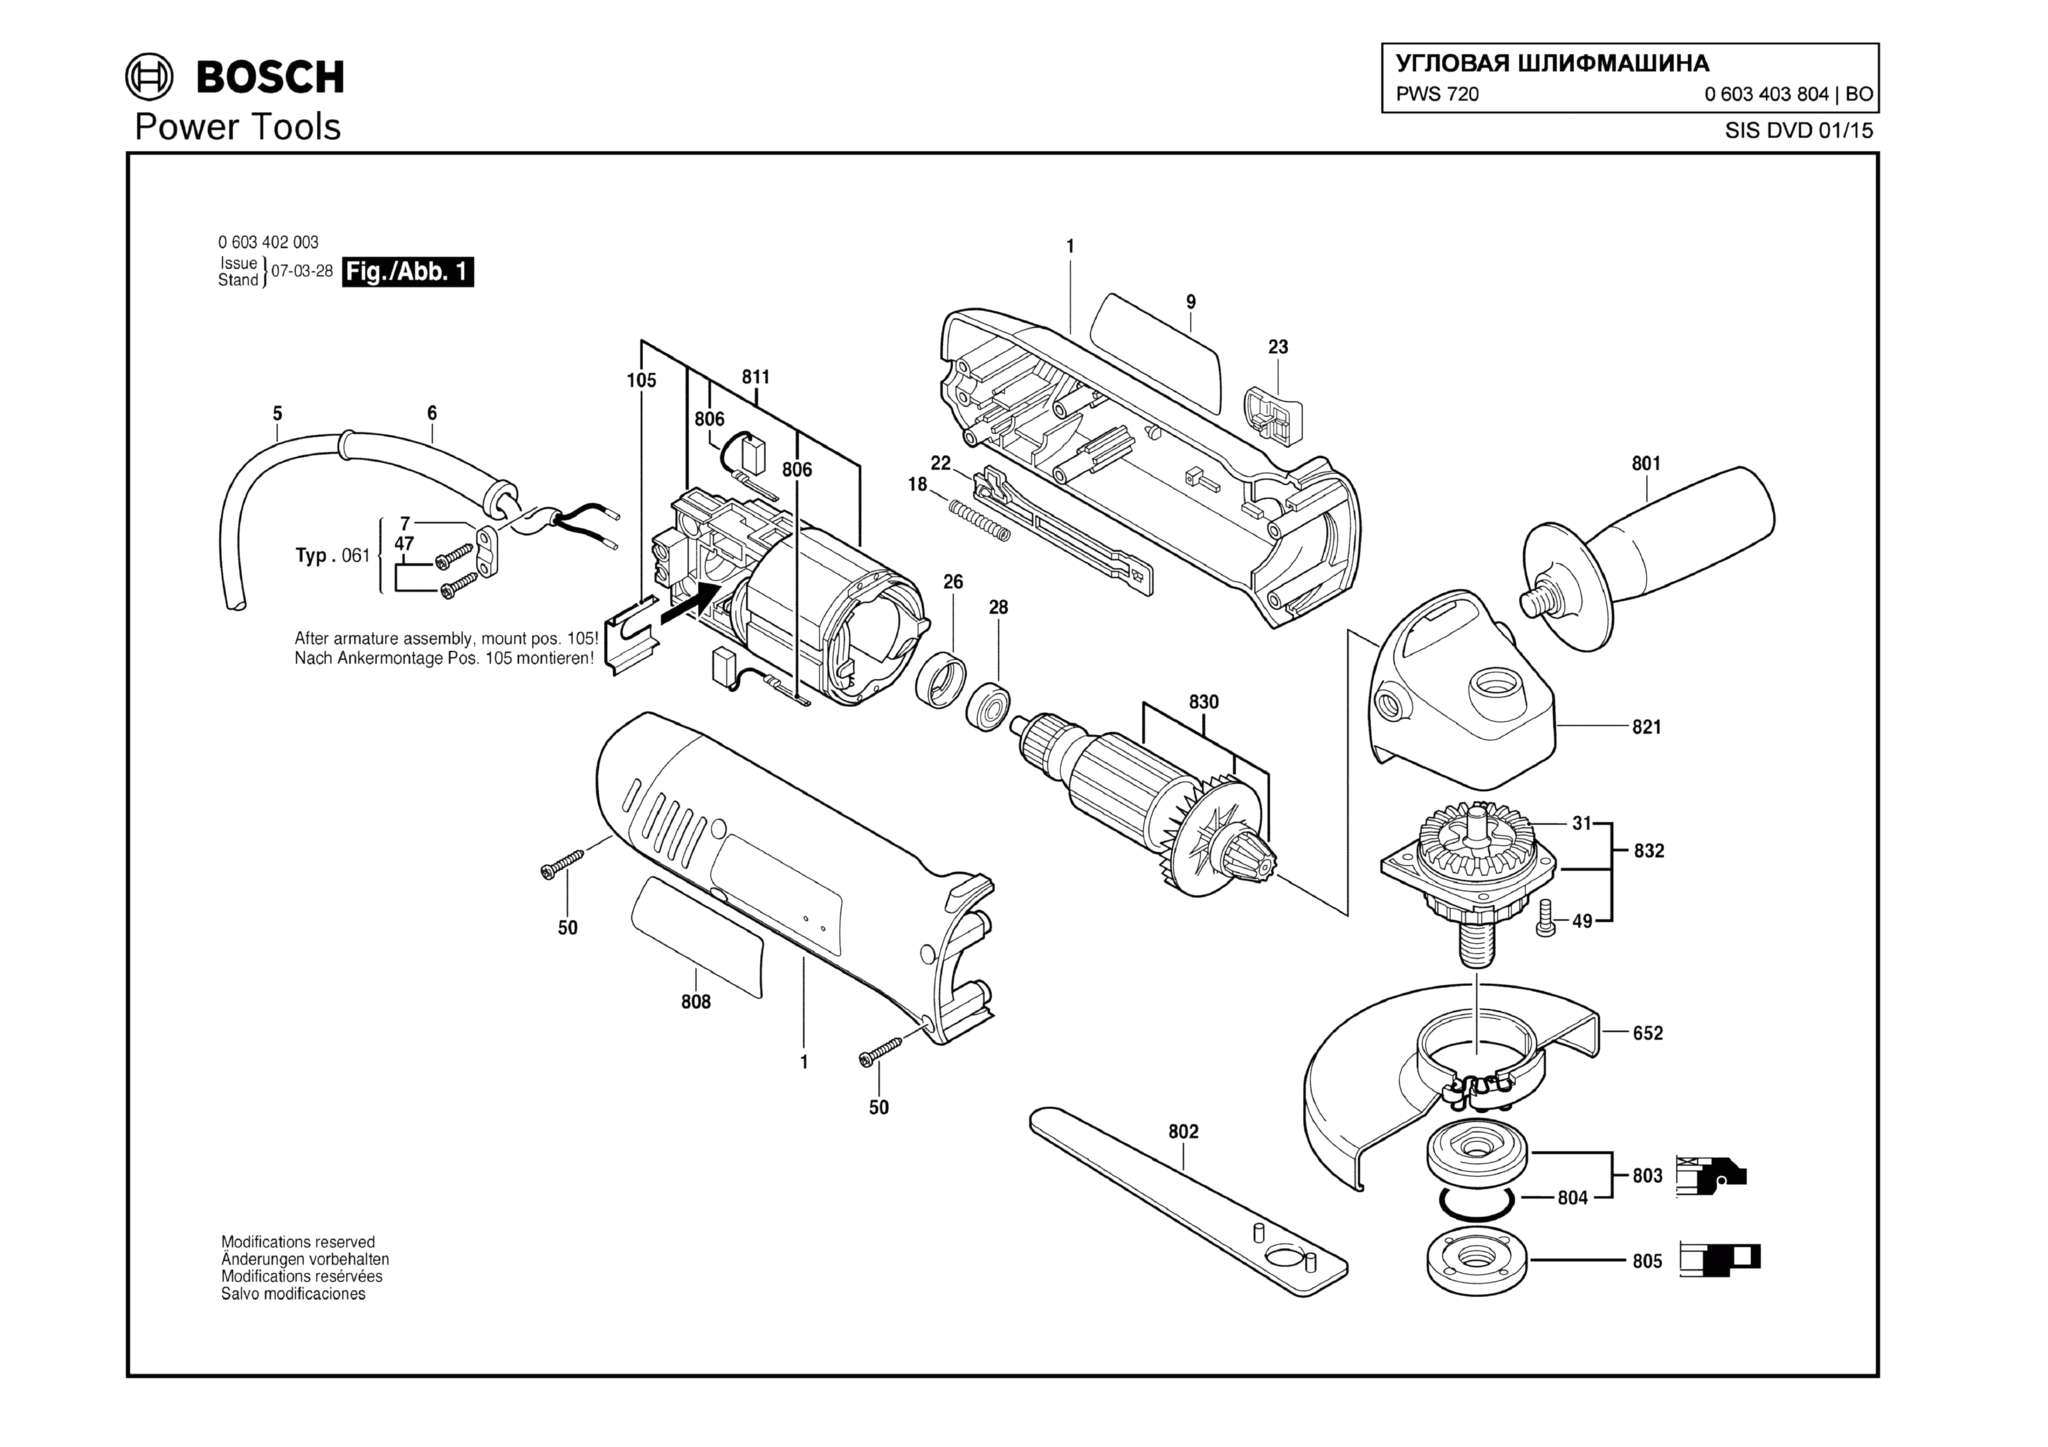 Запчасти, схема и деталировка Bosch PWS 720 (ТИП 0603403804)